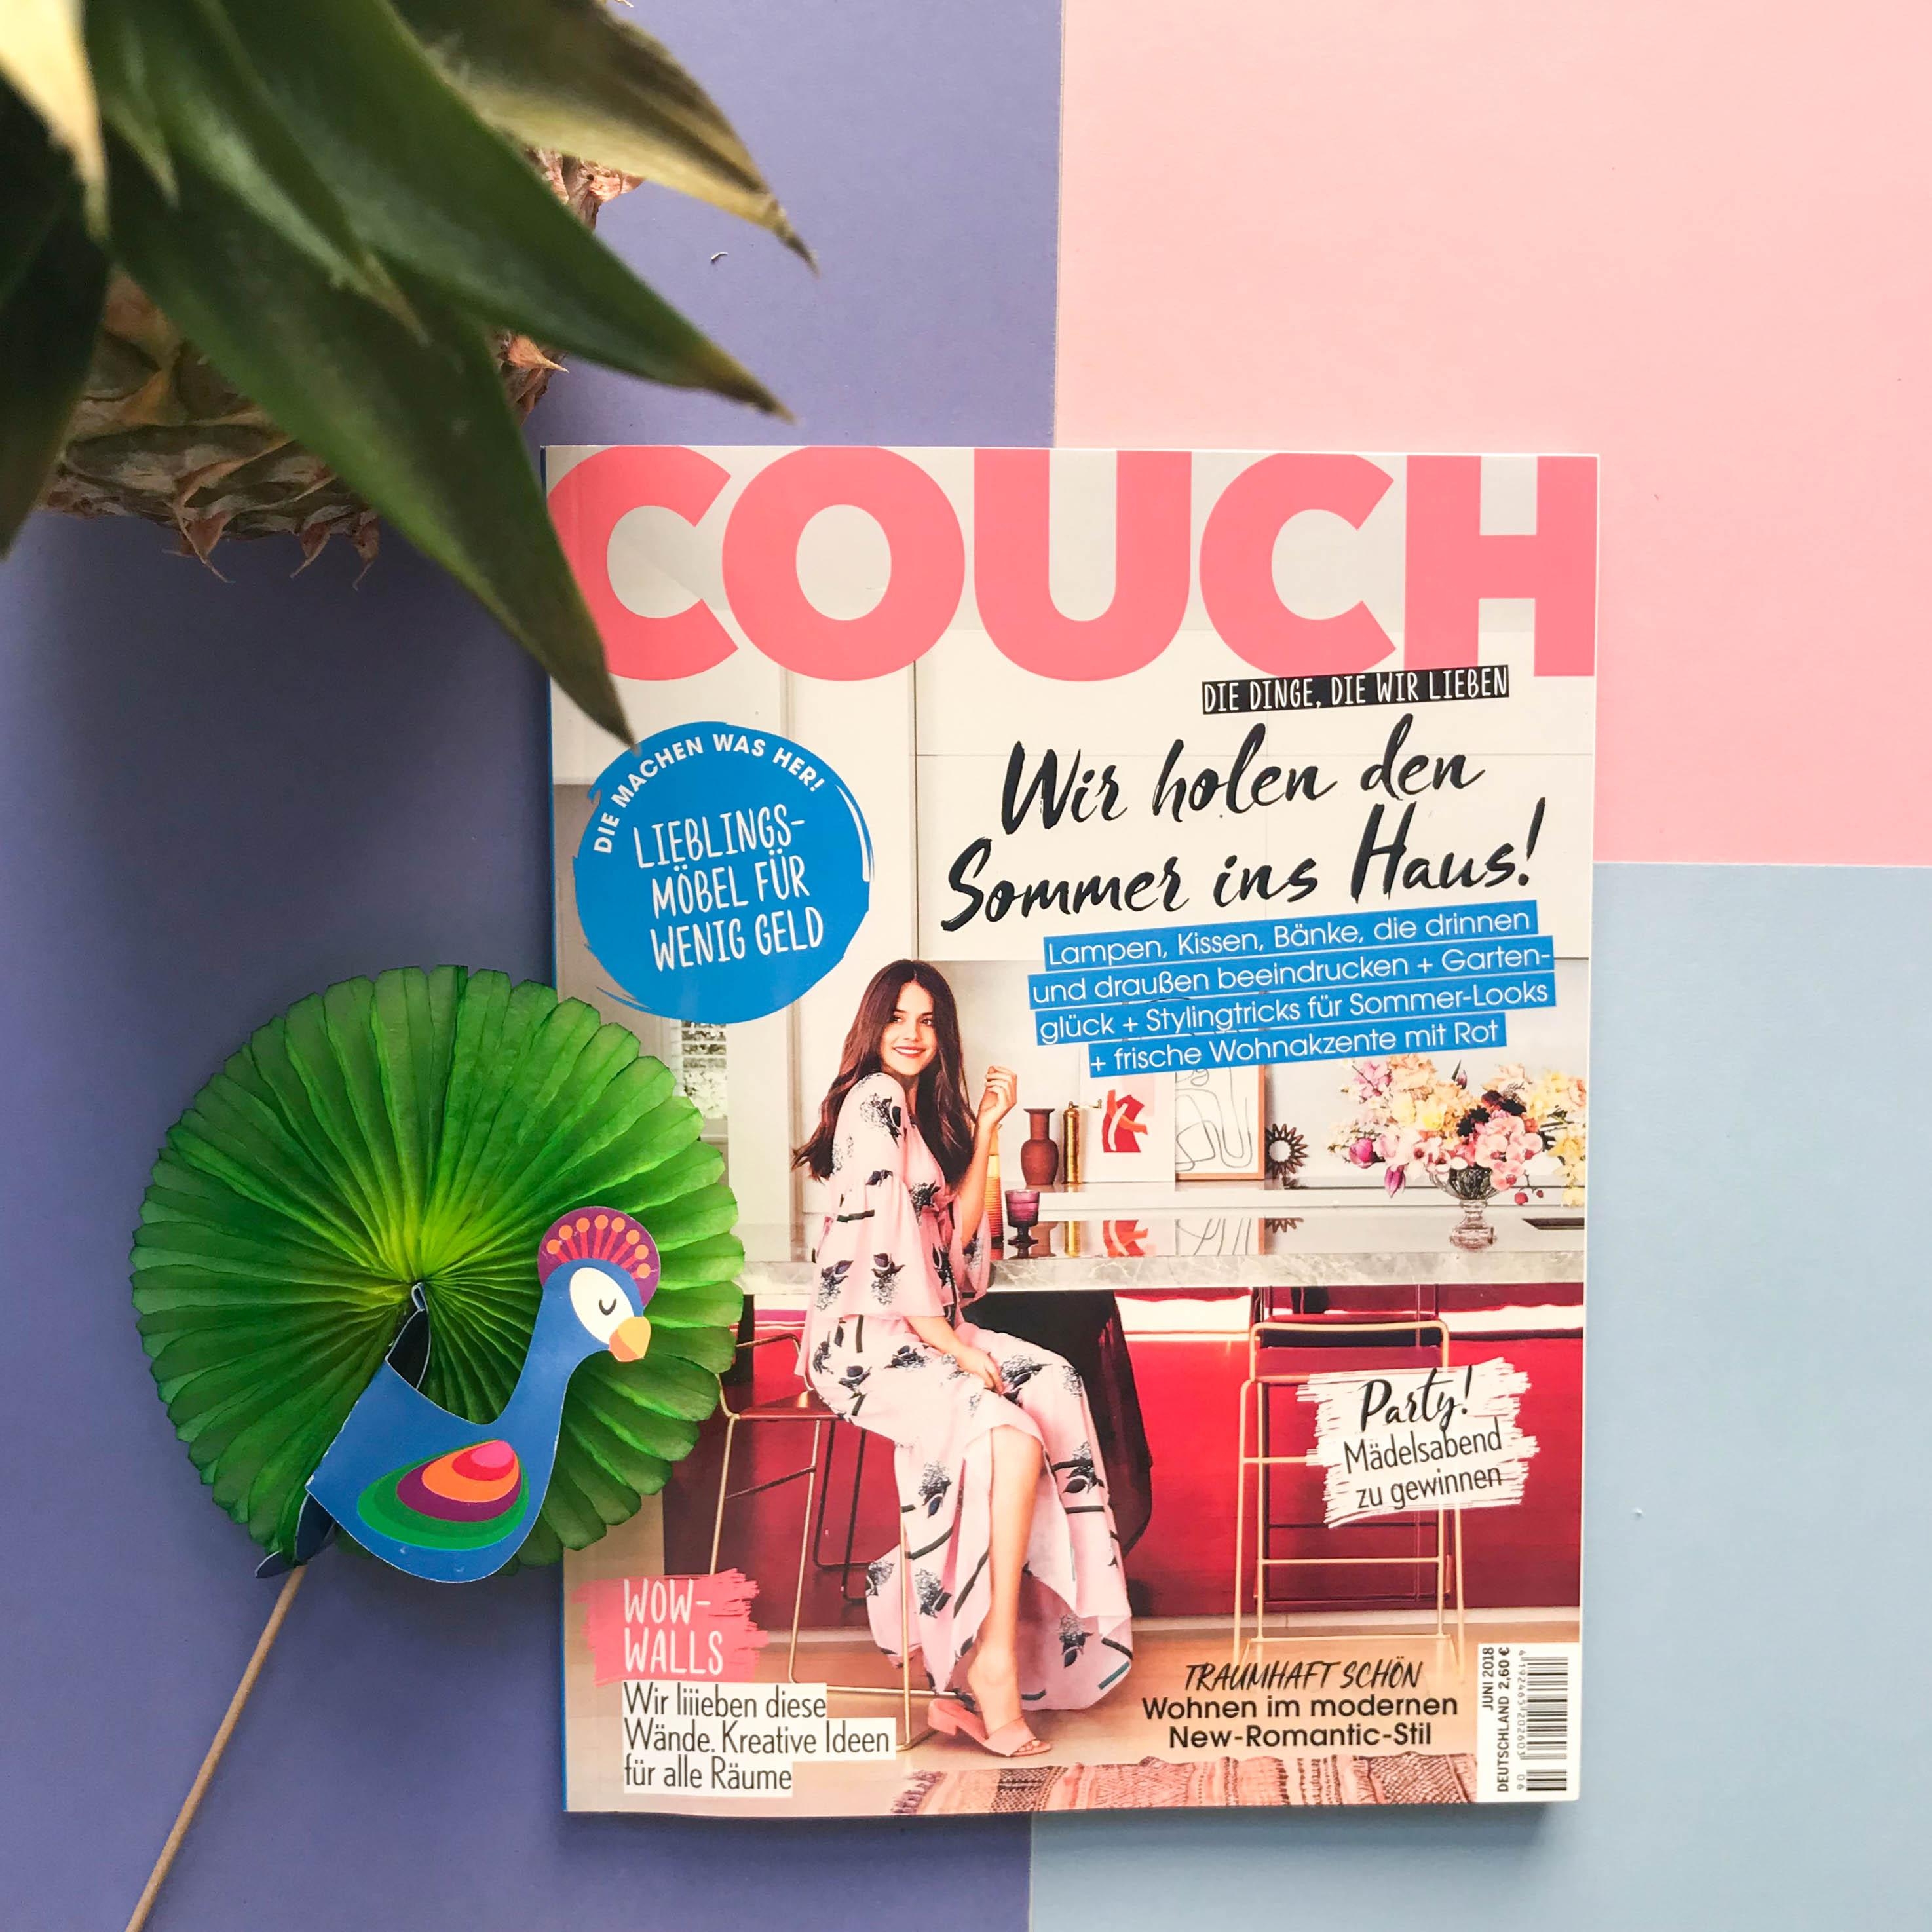 Sommer, Sonne, neue COUCH: Habt ihr sie schon am Kiosk entdeckt?  ☀️
#couchmagazin #couchabo